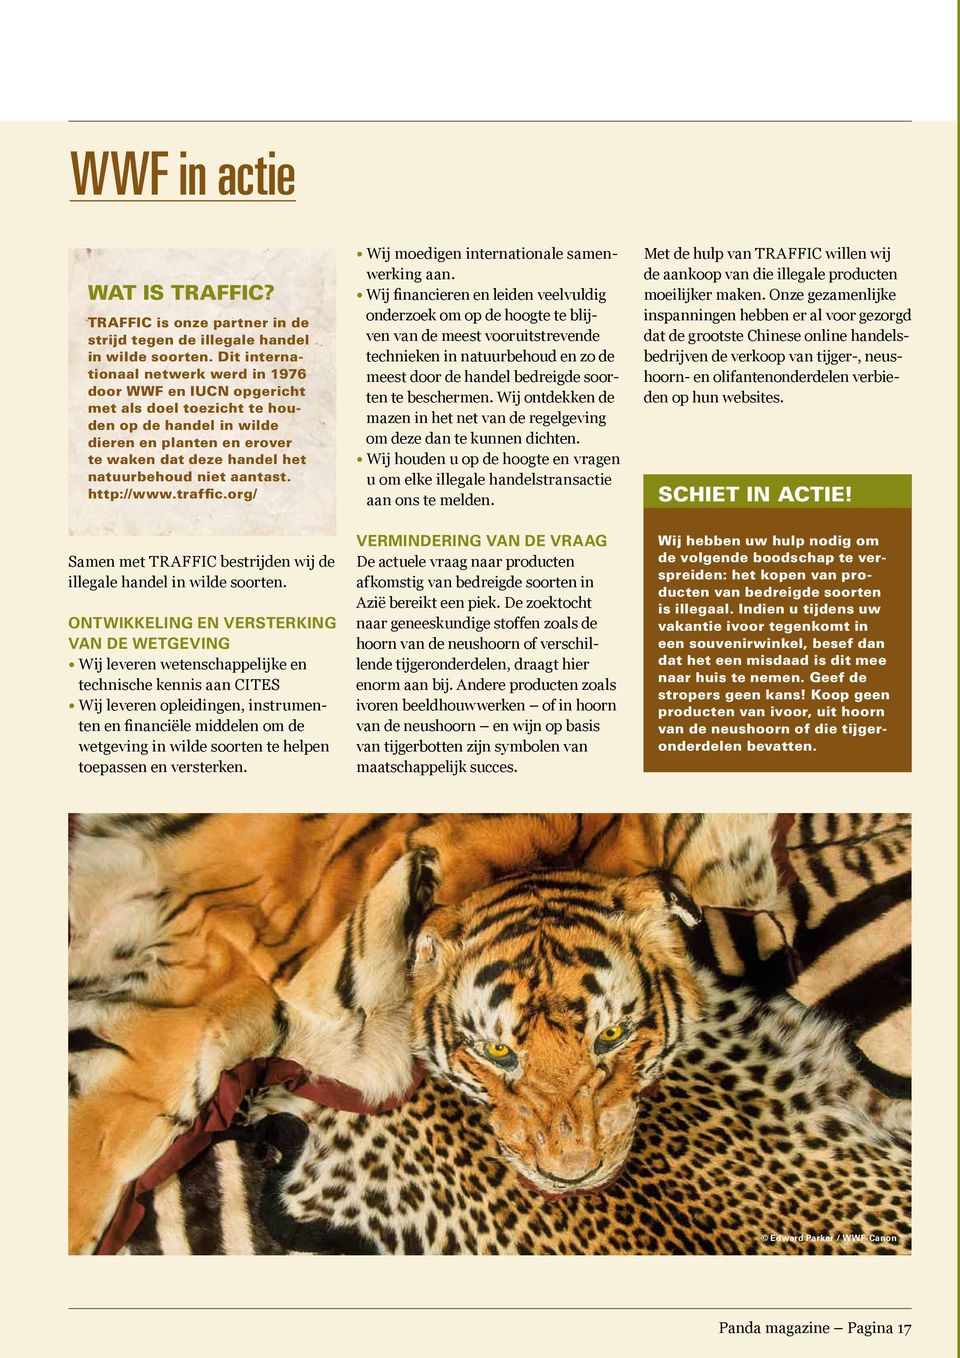 aantast. http://www.traffic.org/ Samen met TRAFFIC bestrijden wij de illegale handel in wilde soorten.